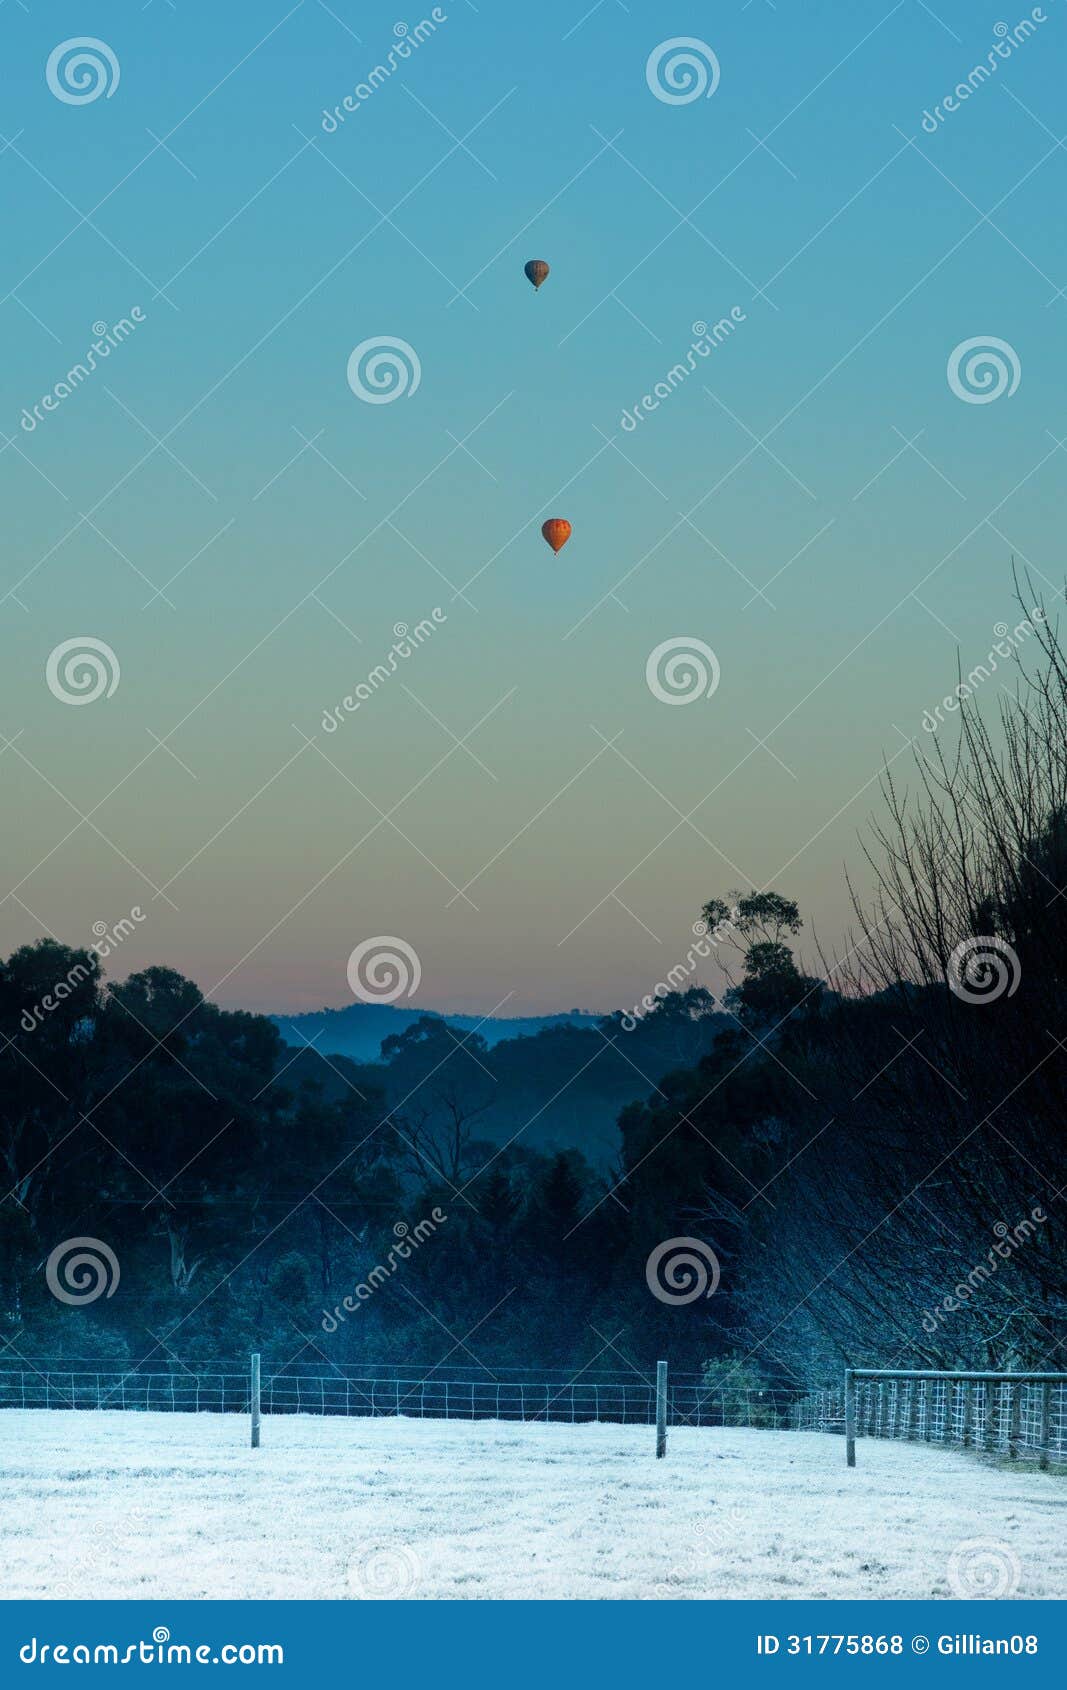 Hot Air Balloons At Dawn Royalty Free Stock Photos - Image ...